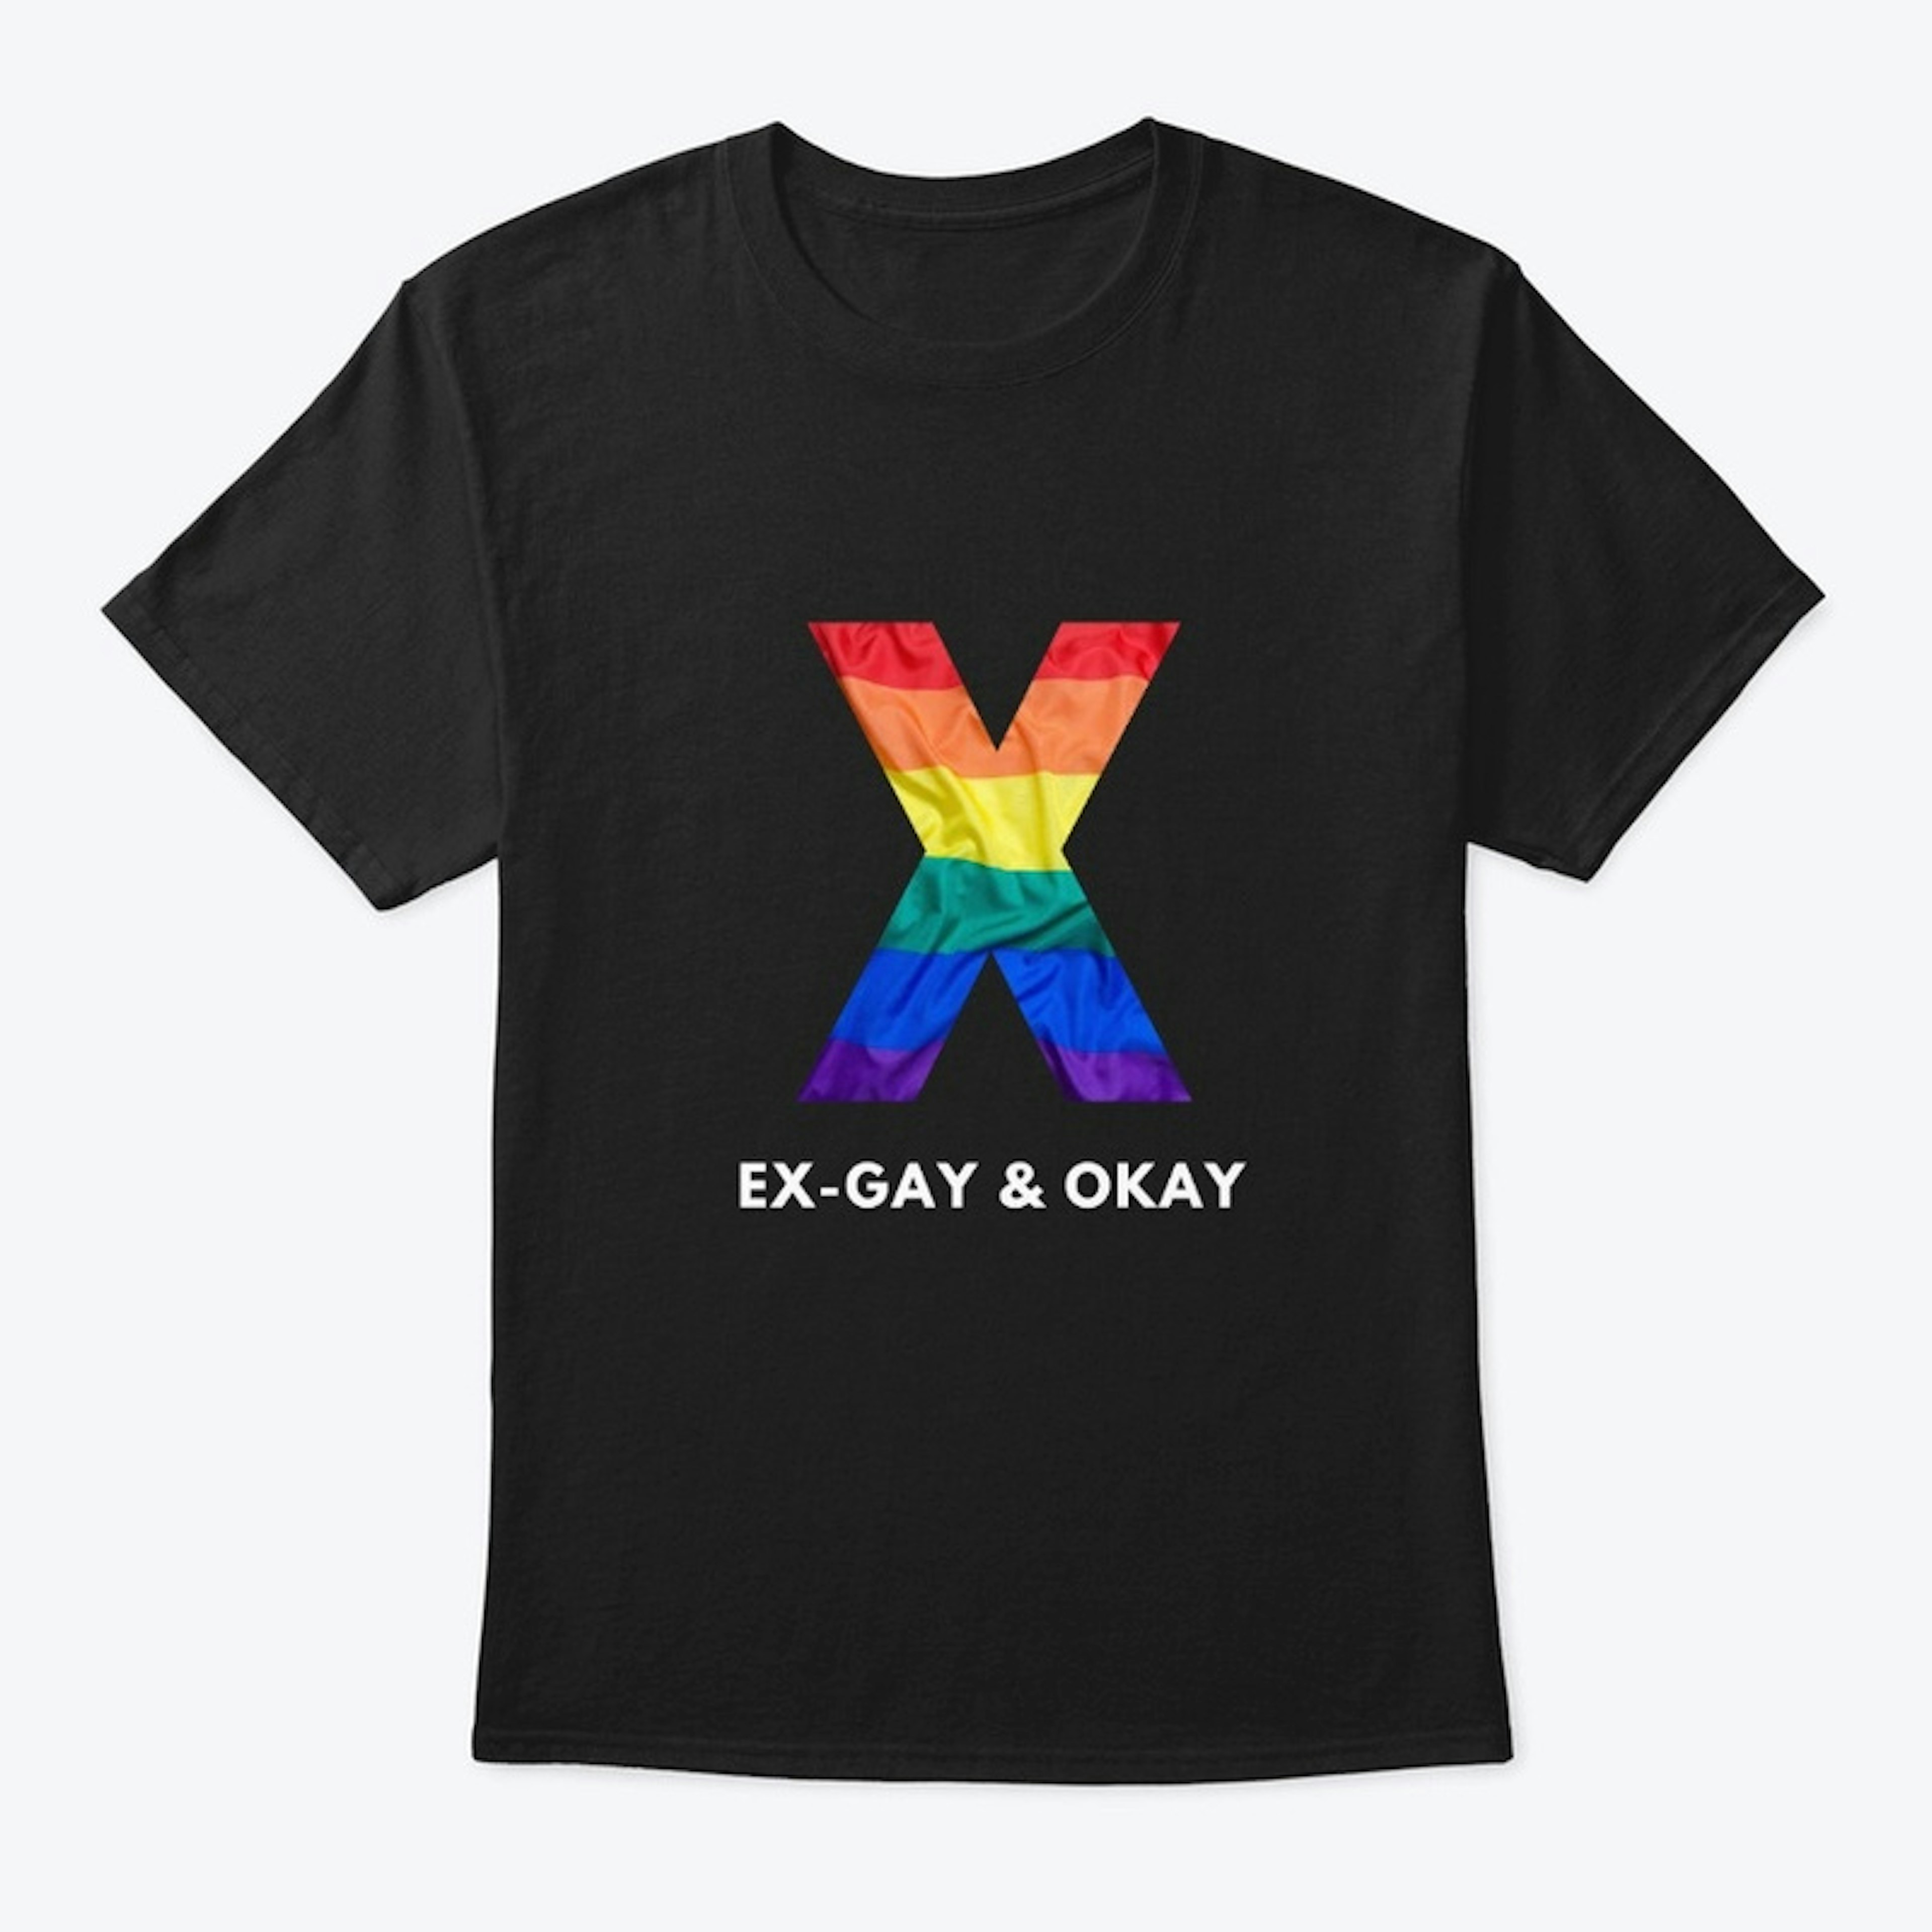 Ex-Gay & Okay